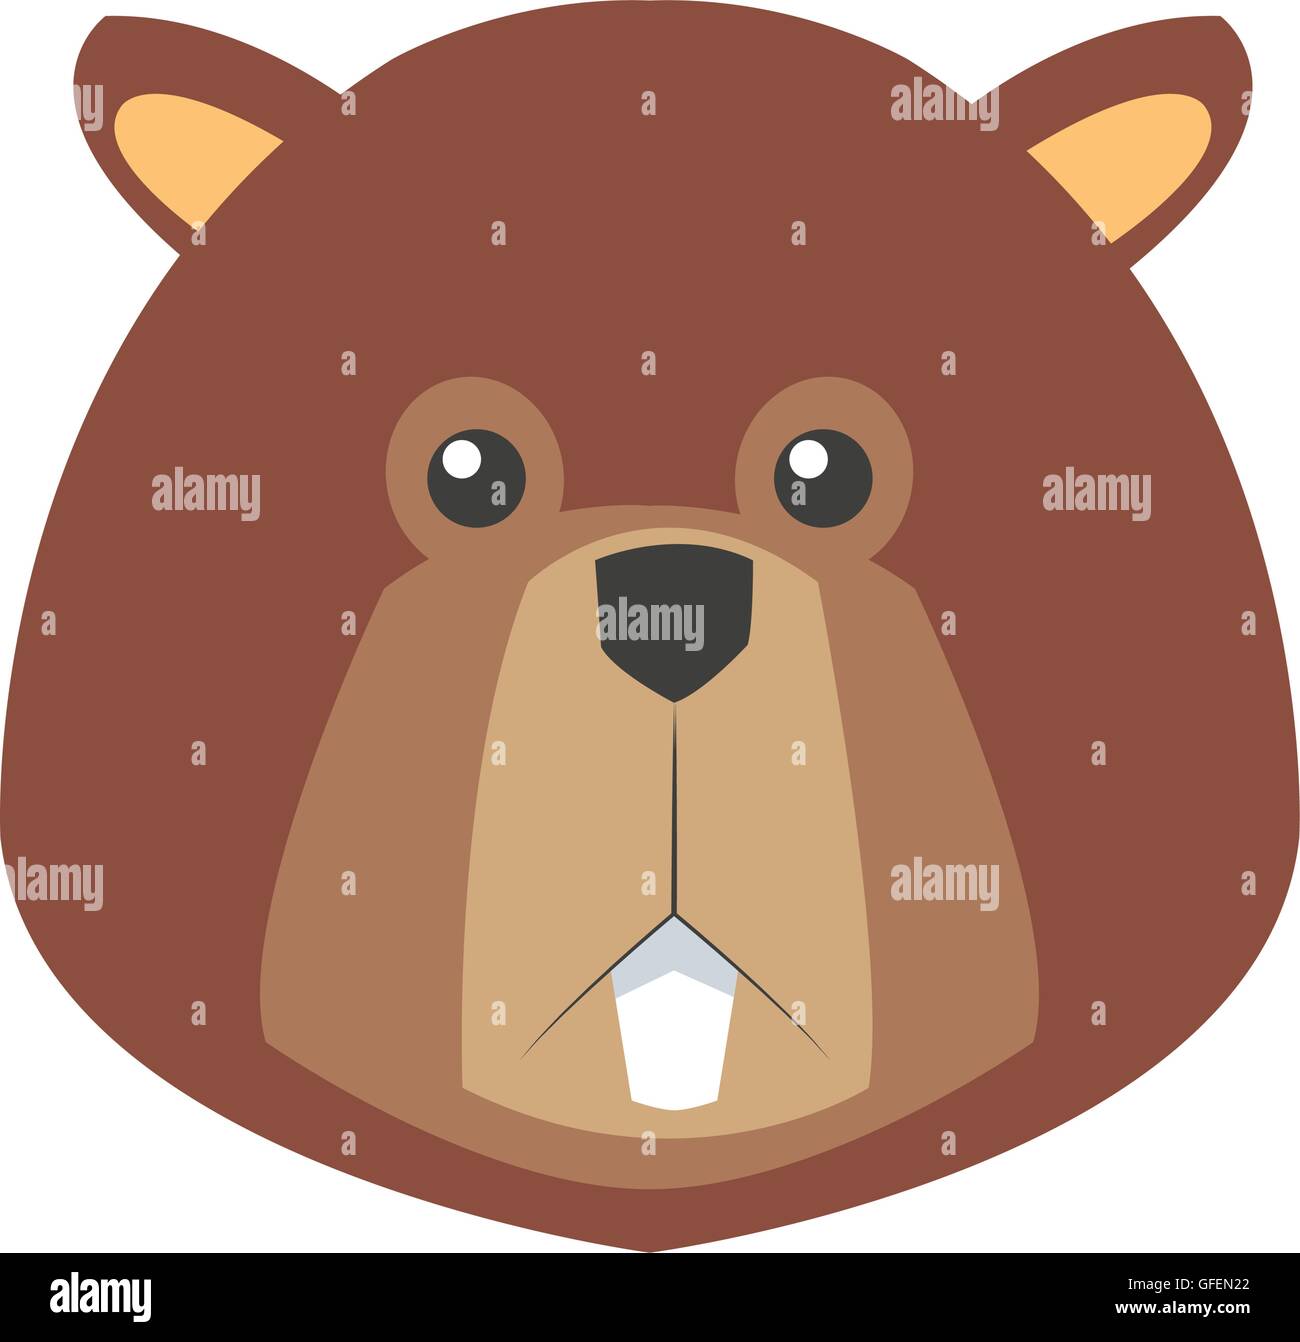 single beaver icon Stock Vector